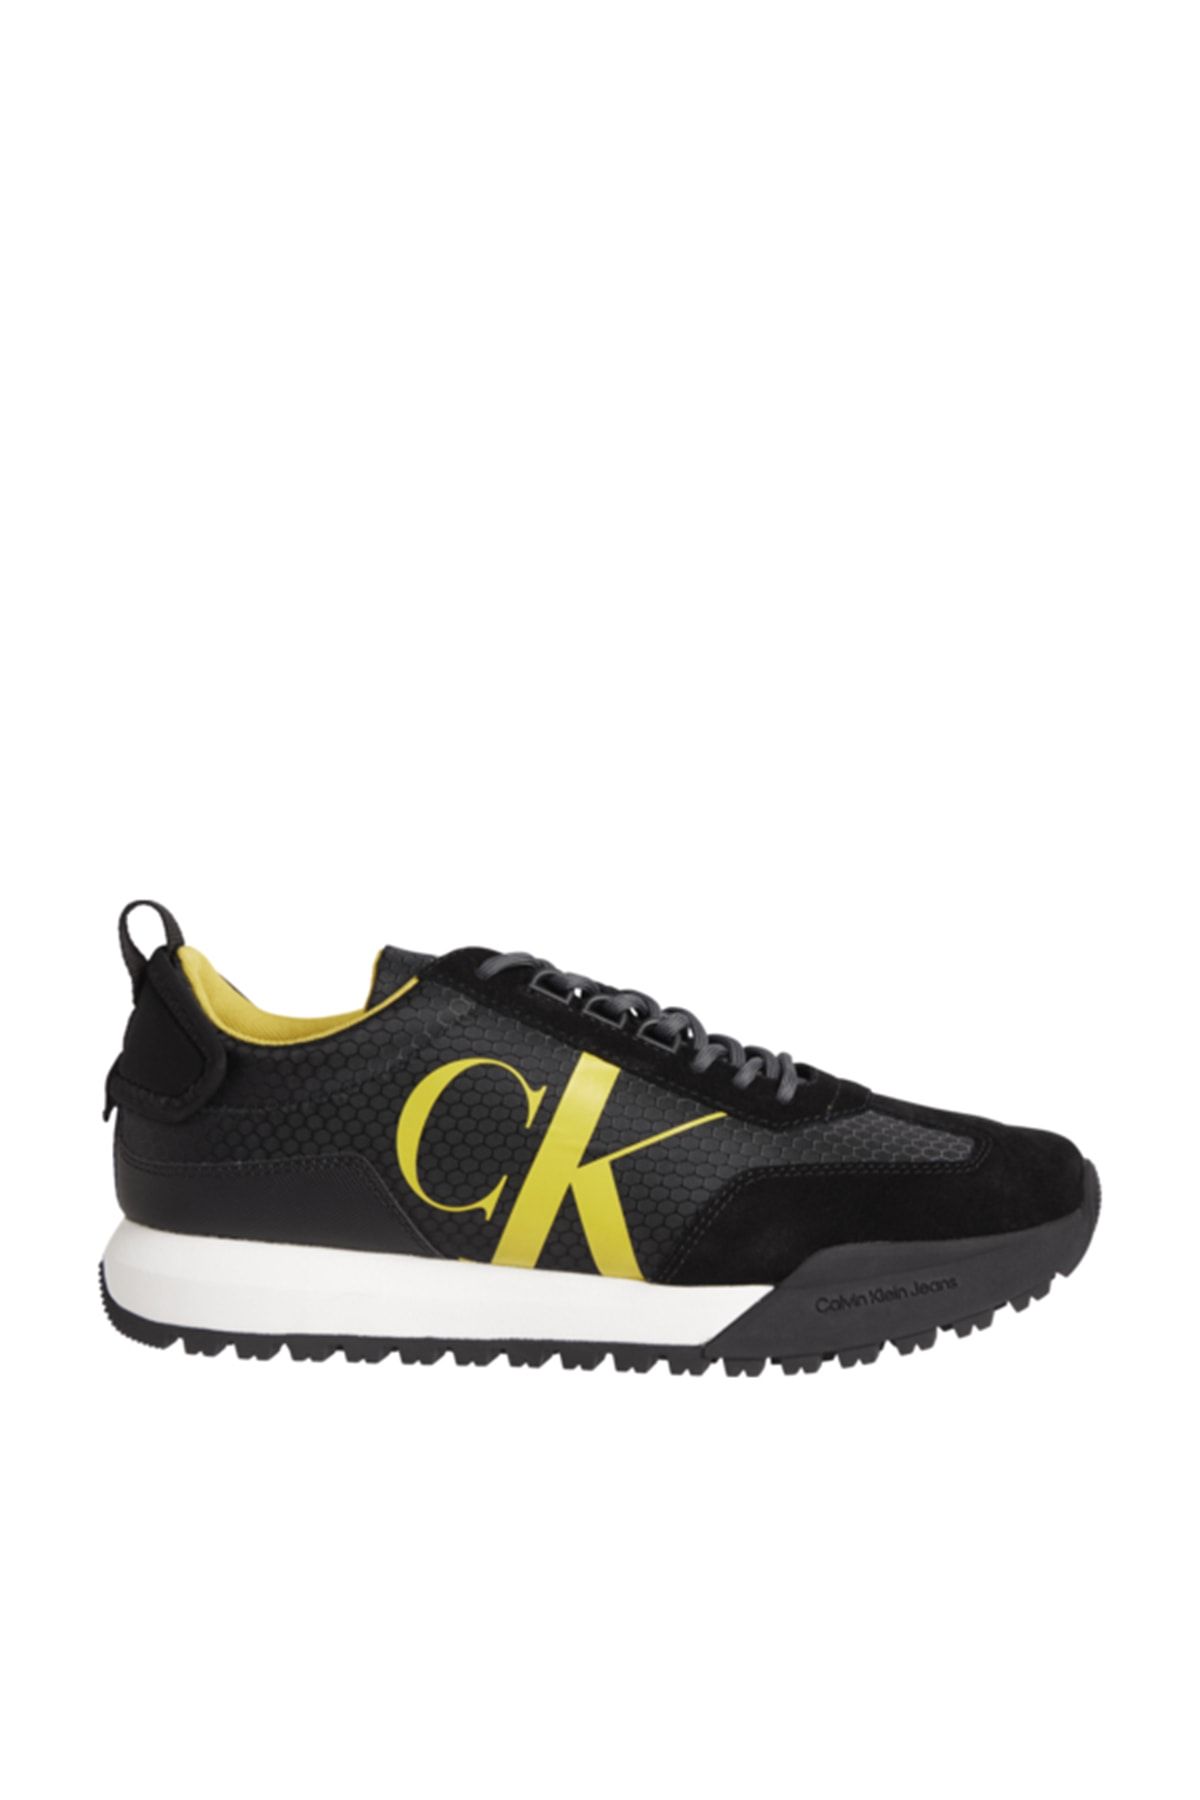 Calvin Klein Sneakers - Black - Flat - Trendyol